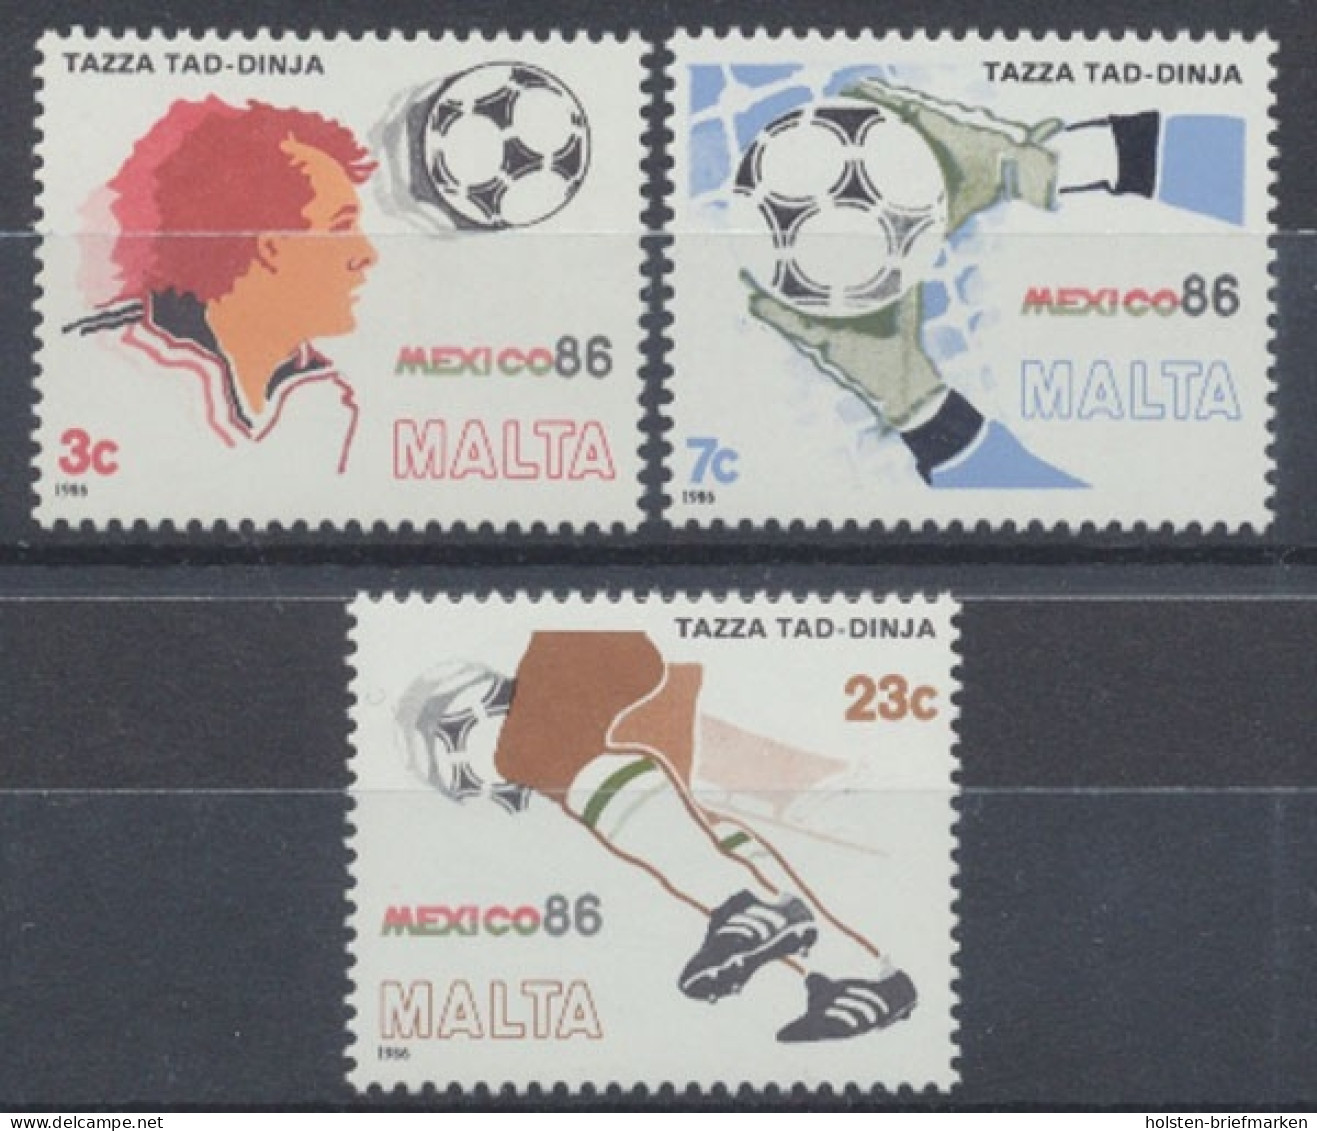 Malta, Fußball, MiNr. 748-750, Postfrisch - Malte